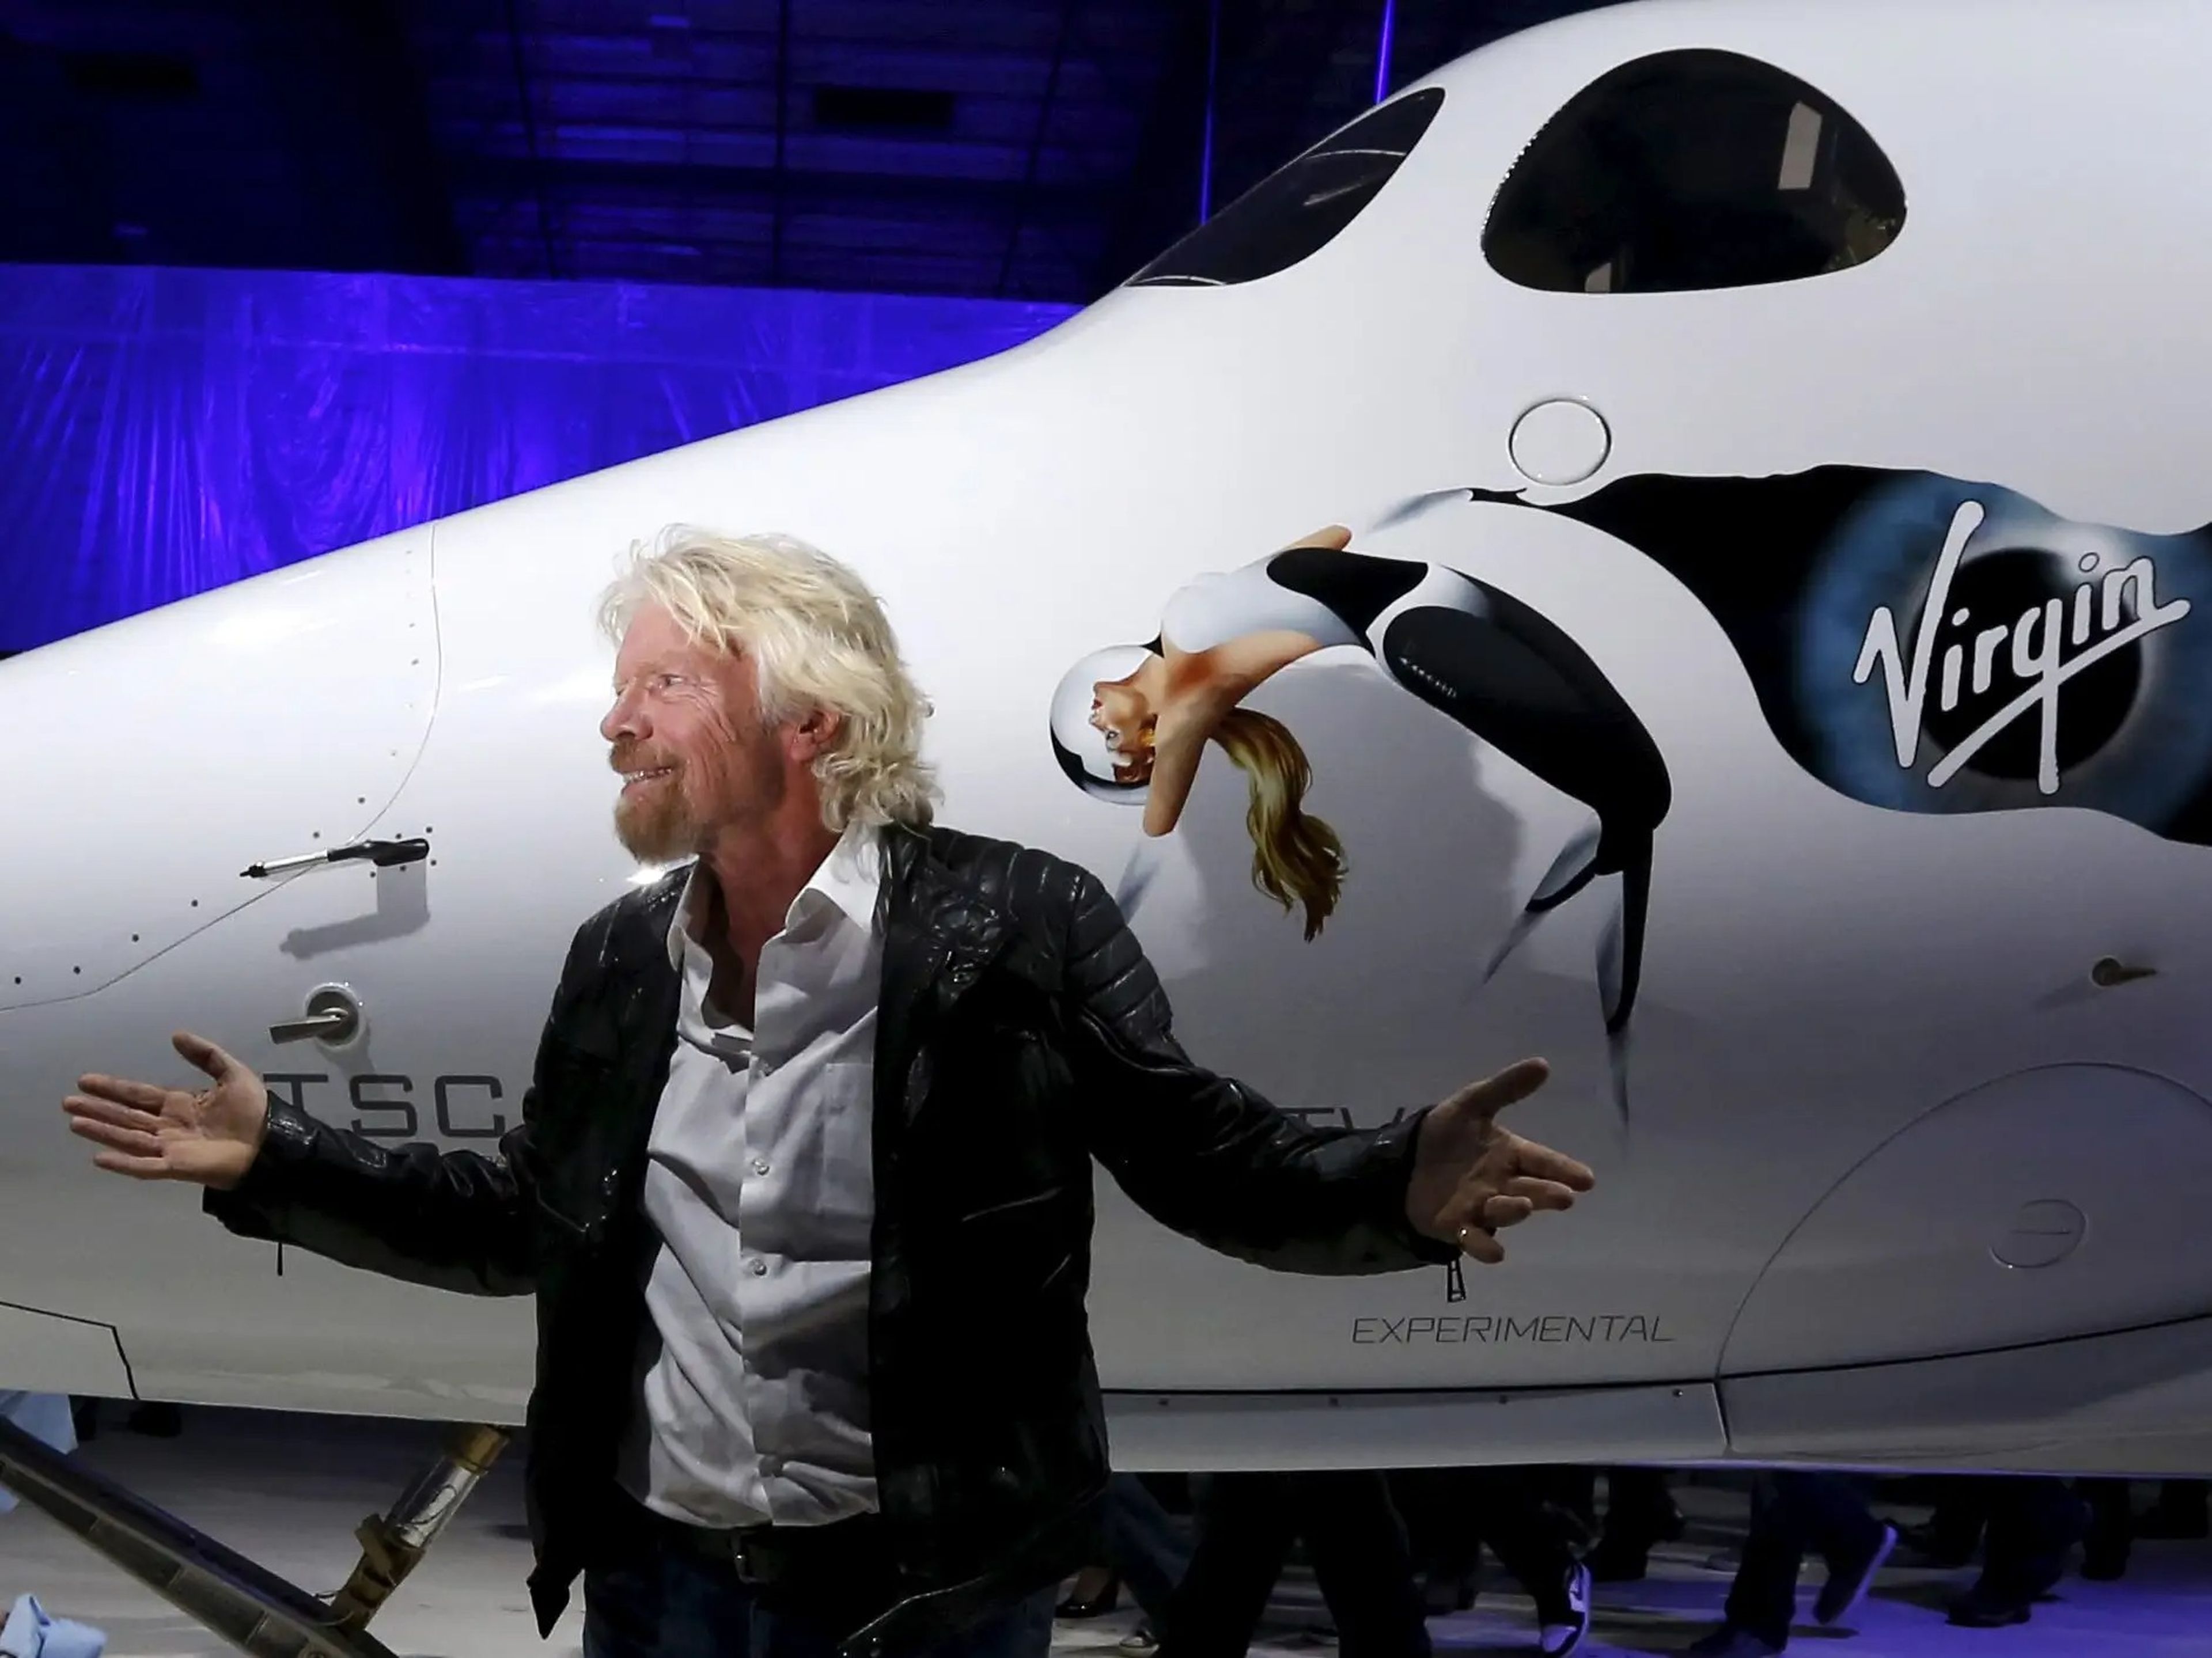 Branson con la nave SpaceShipTwo de Virgin, en febrero de 2016.